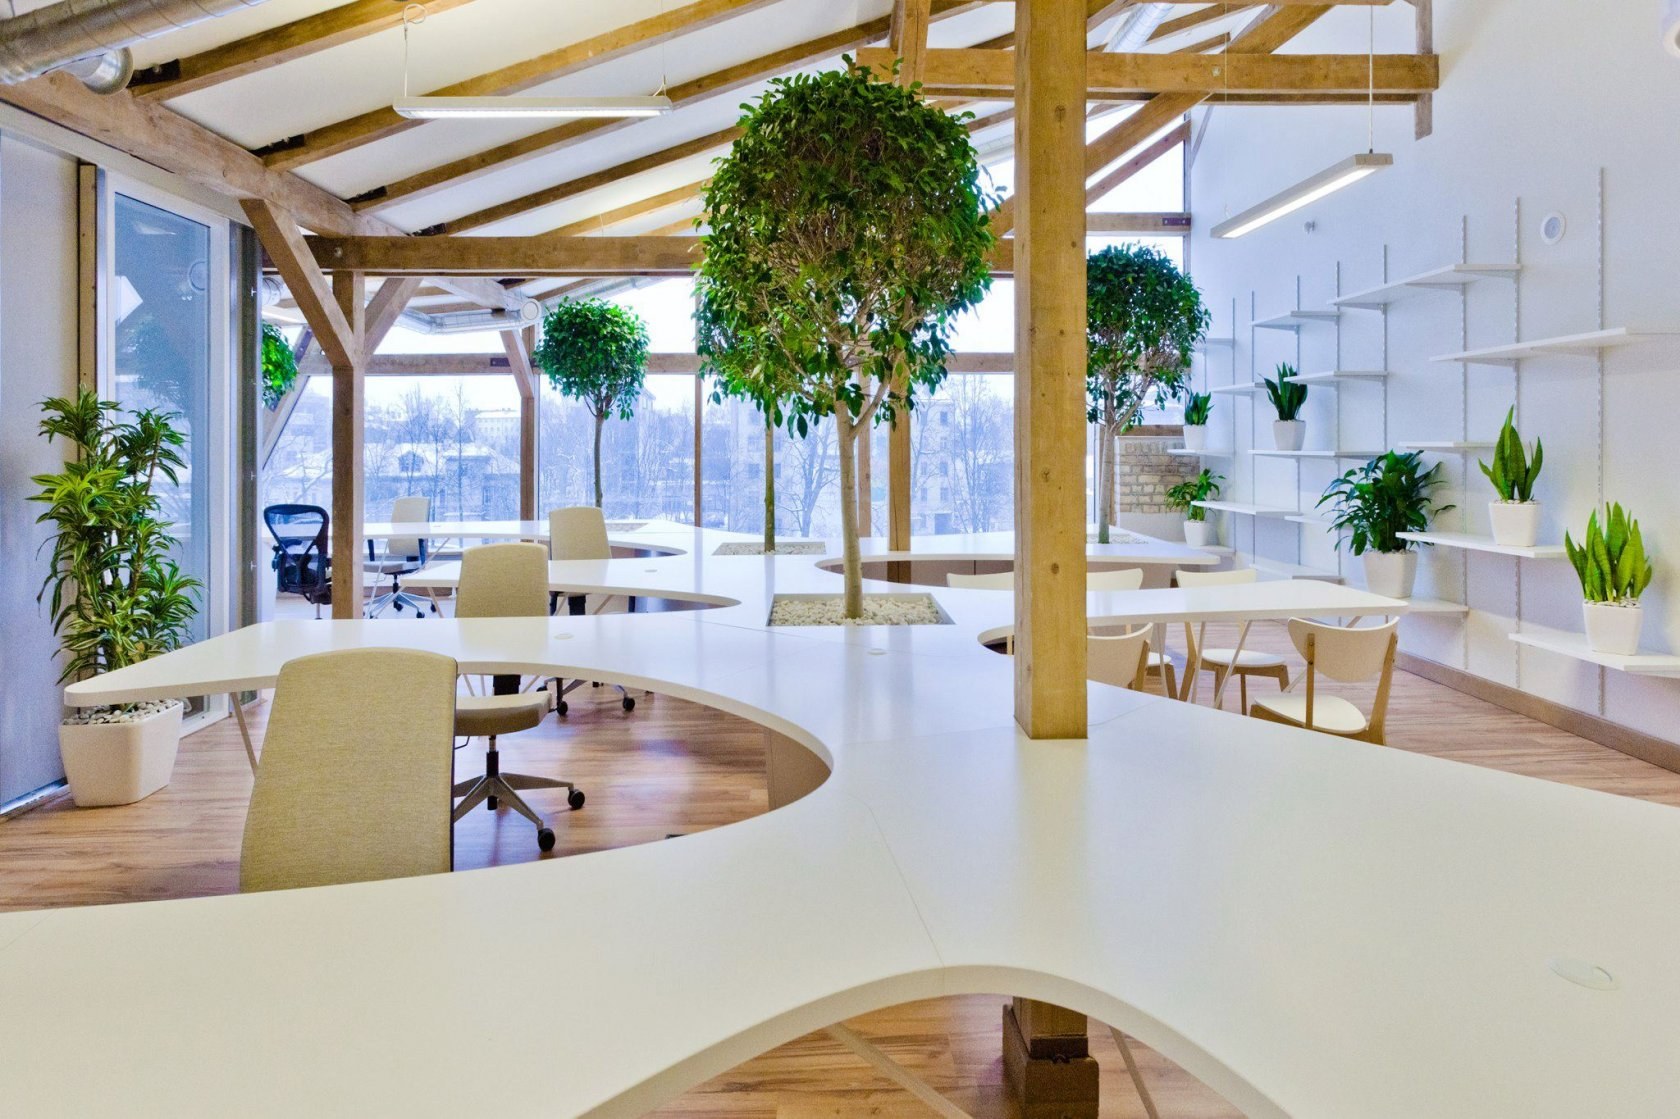 15 Mẫu thiết kế nội thất văn phòng nhỏ  tối ưu công năng